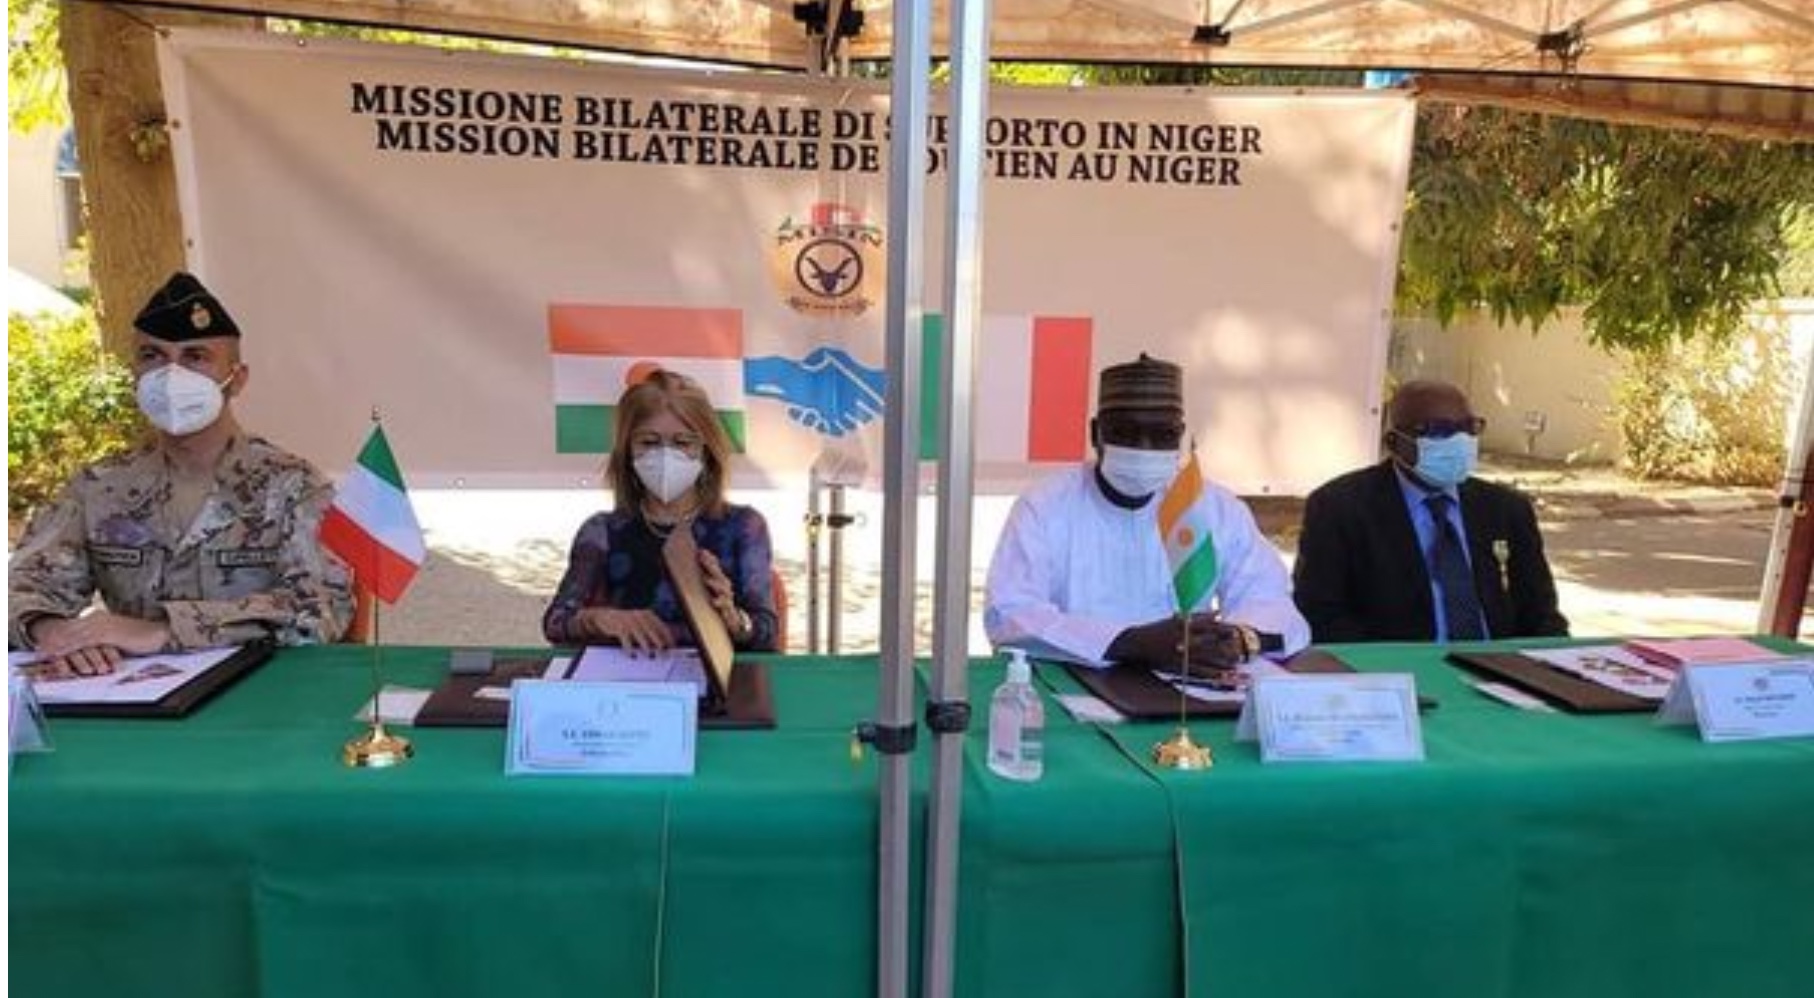 Niger, Mission du Misin Défense, les autorités nigérianes remercient le gouvernement italien : 1000 kits de santé donnés